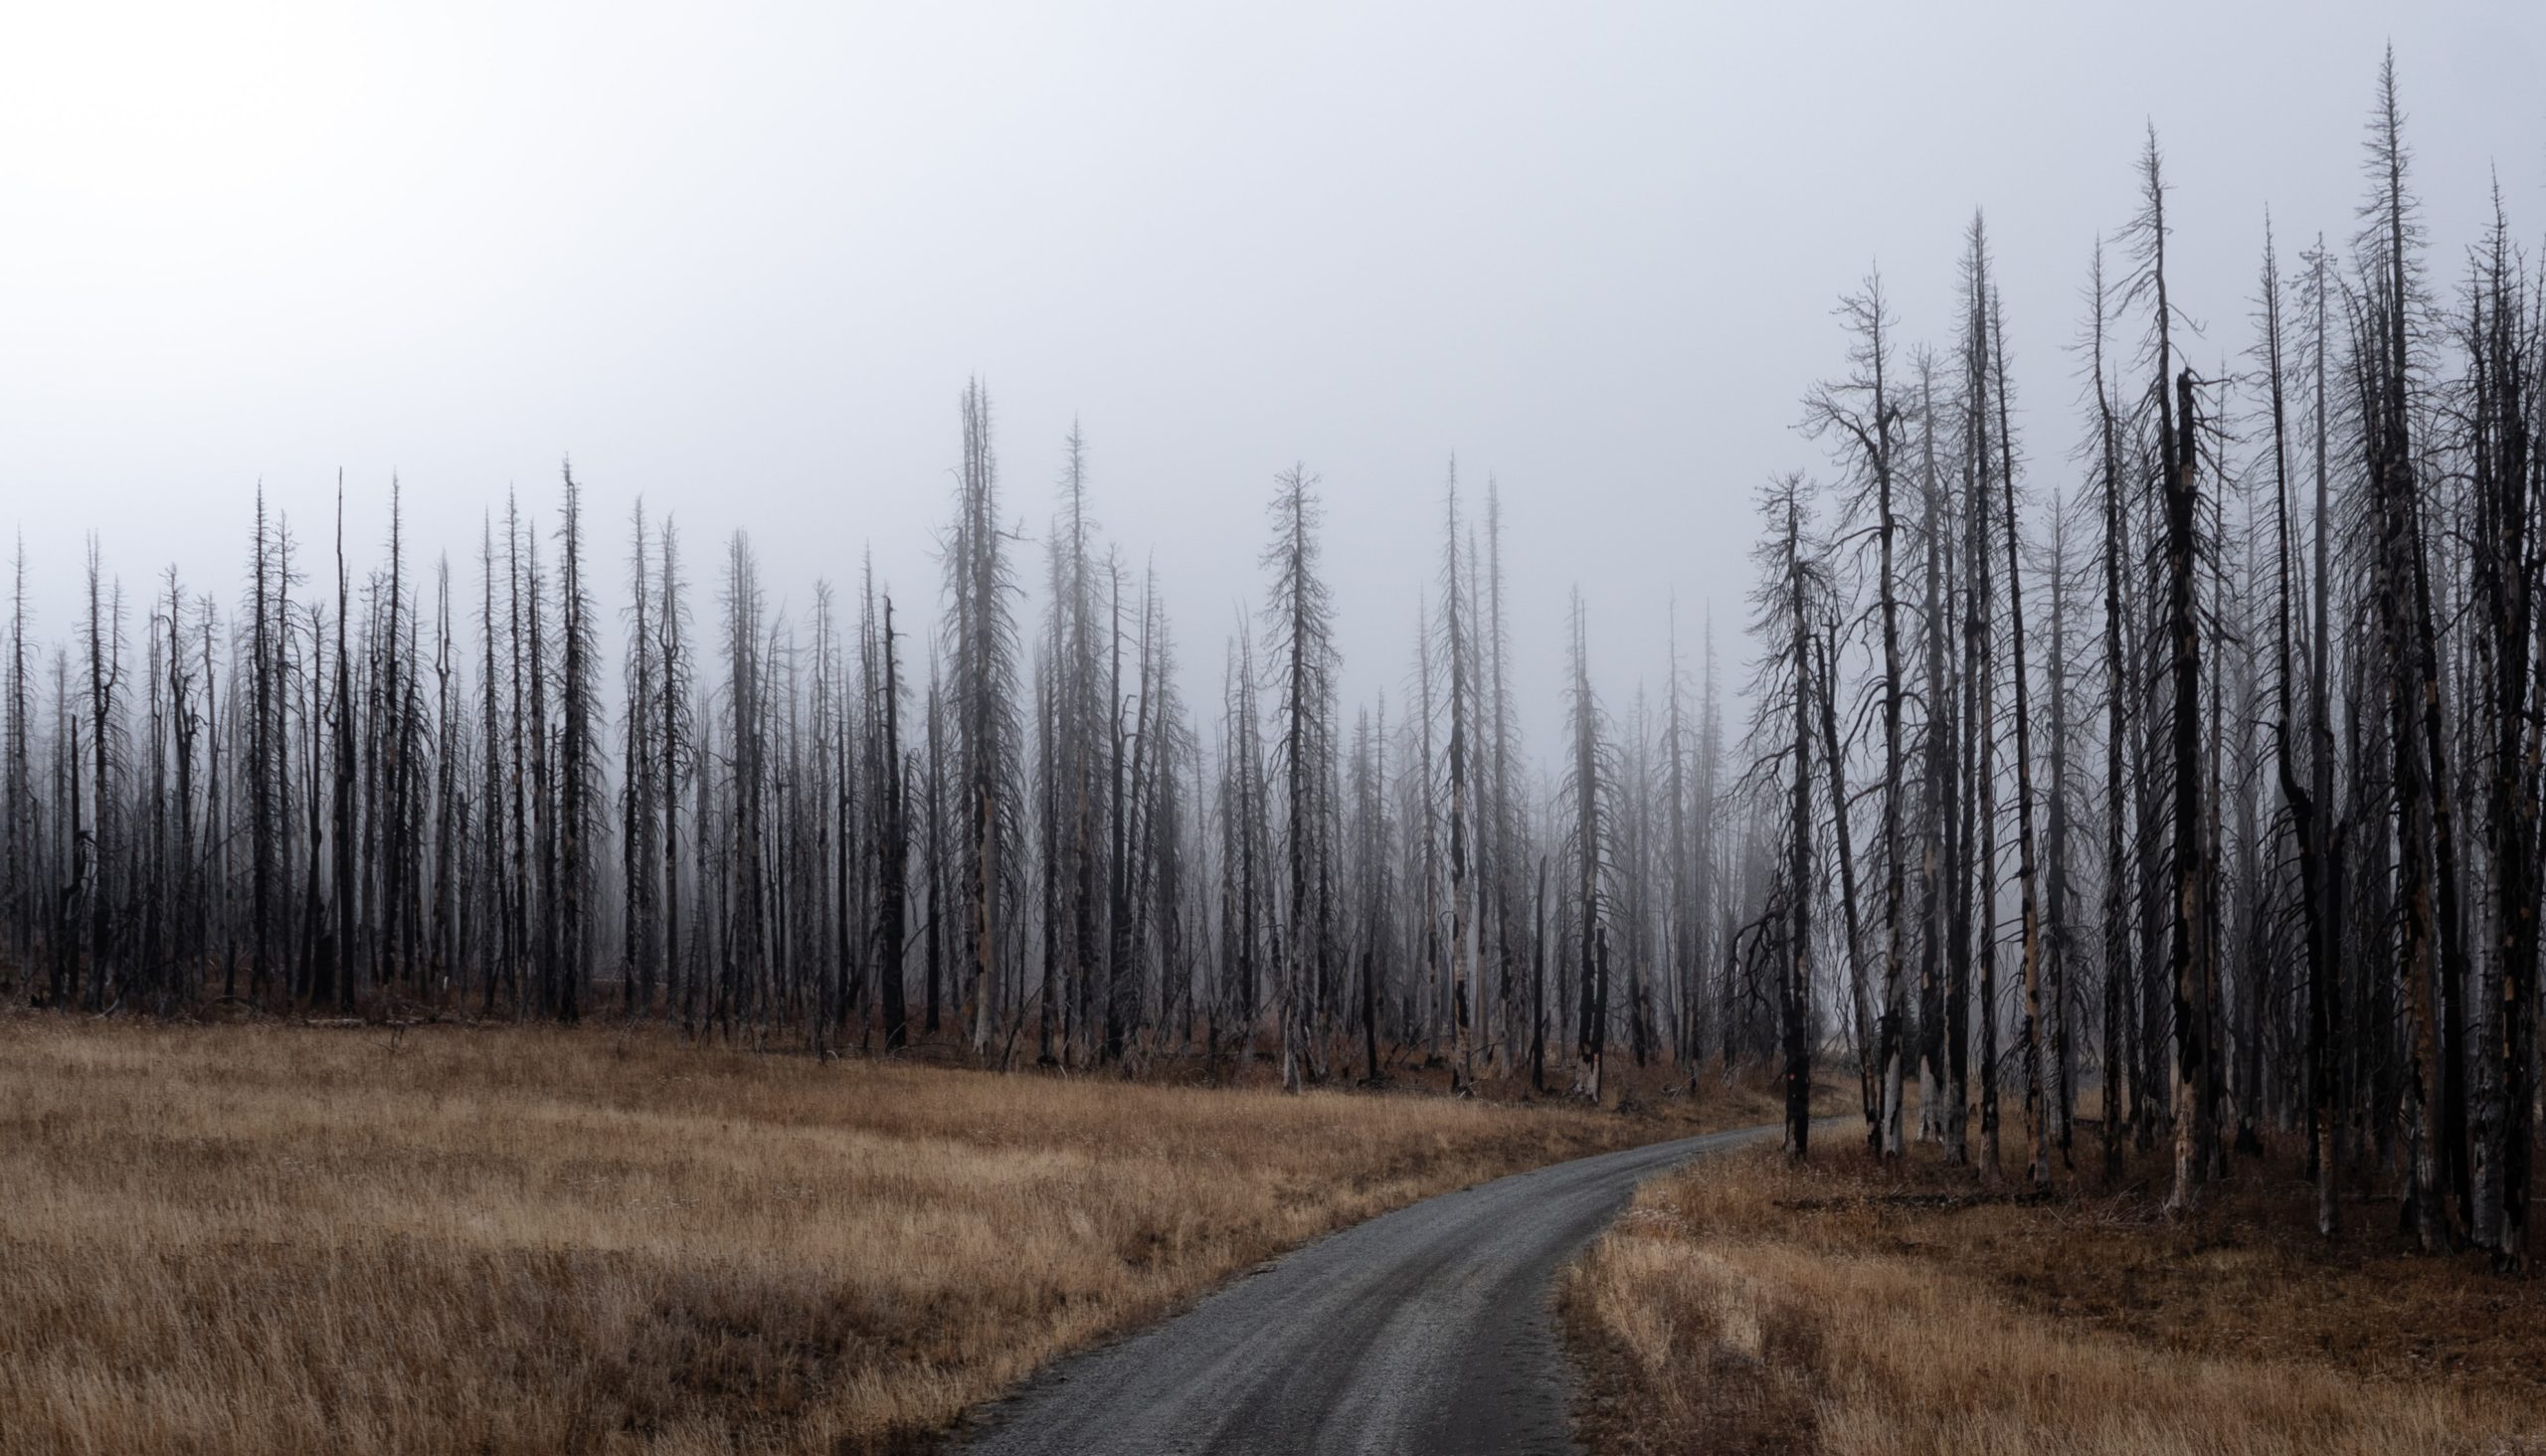 Eine Betonstraße führt durch einen Wald, der komplett abgebrannt ist. Nur noch die schwarzen Stämme stehen im Nebel